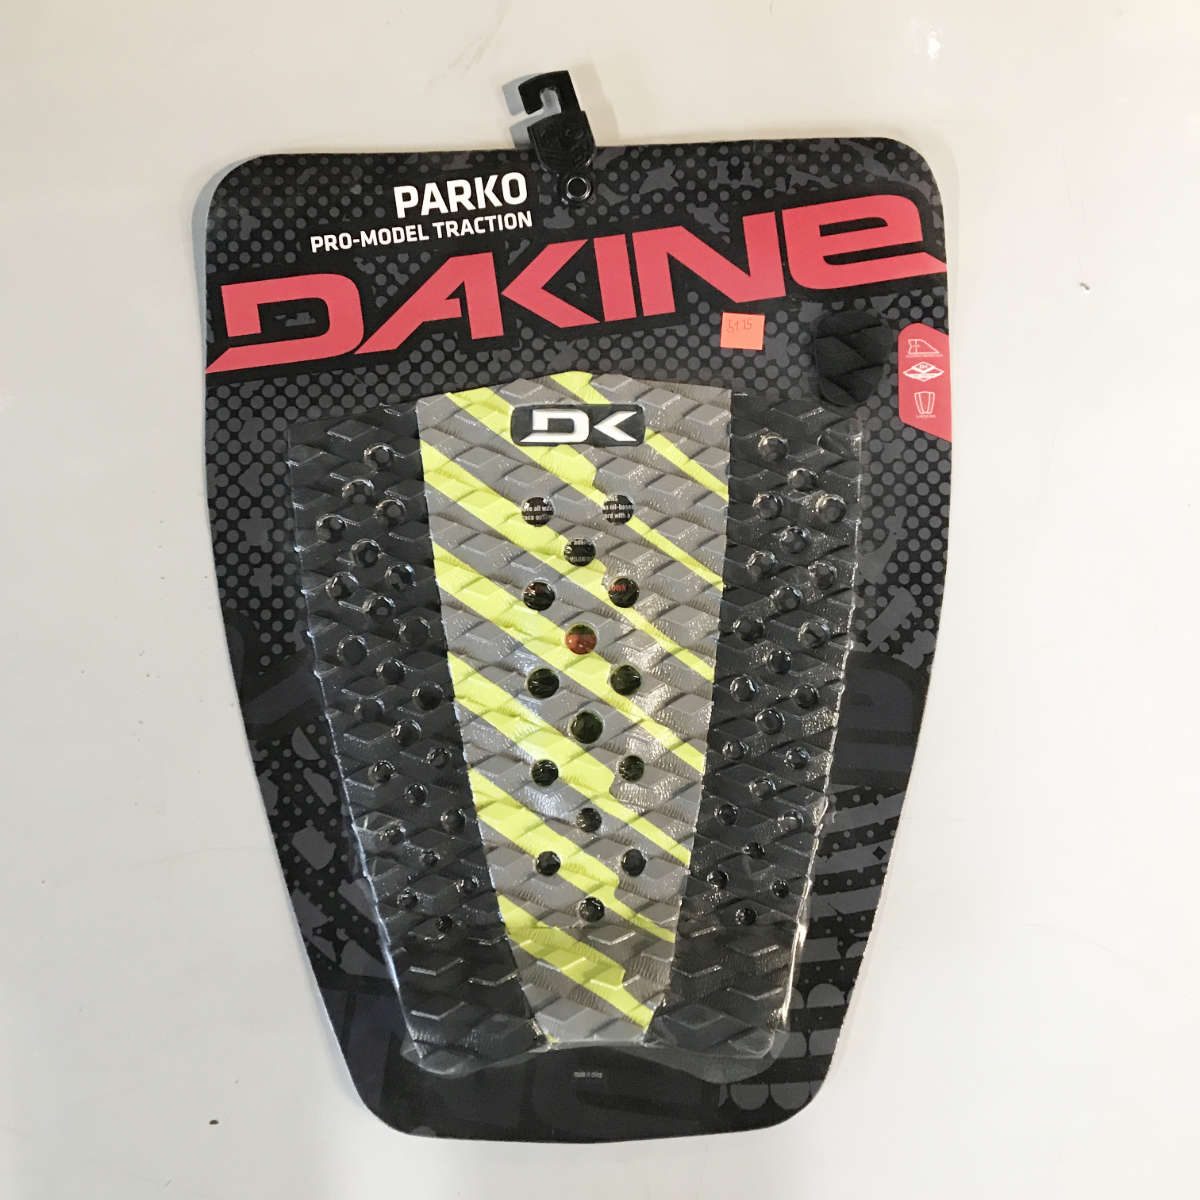 
                  
                    Deck pads - Dakine - Parko Pro-Model Traction
                  
                